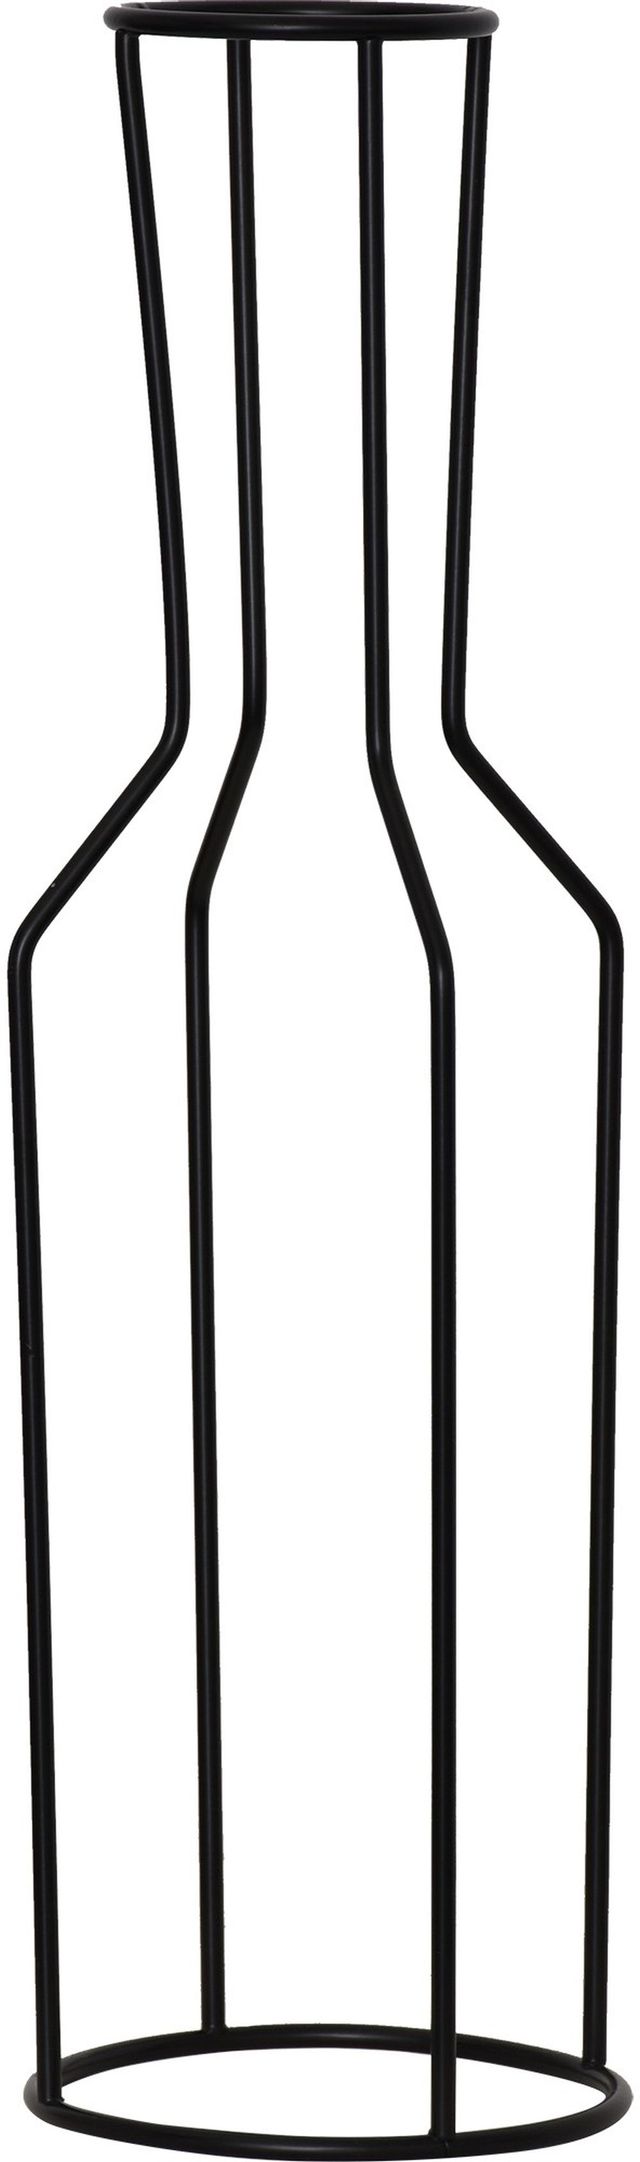 Renwil® Vignette Set of 4 Matte Black Vases 3